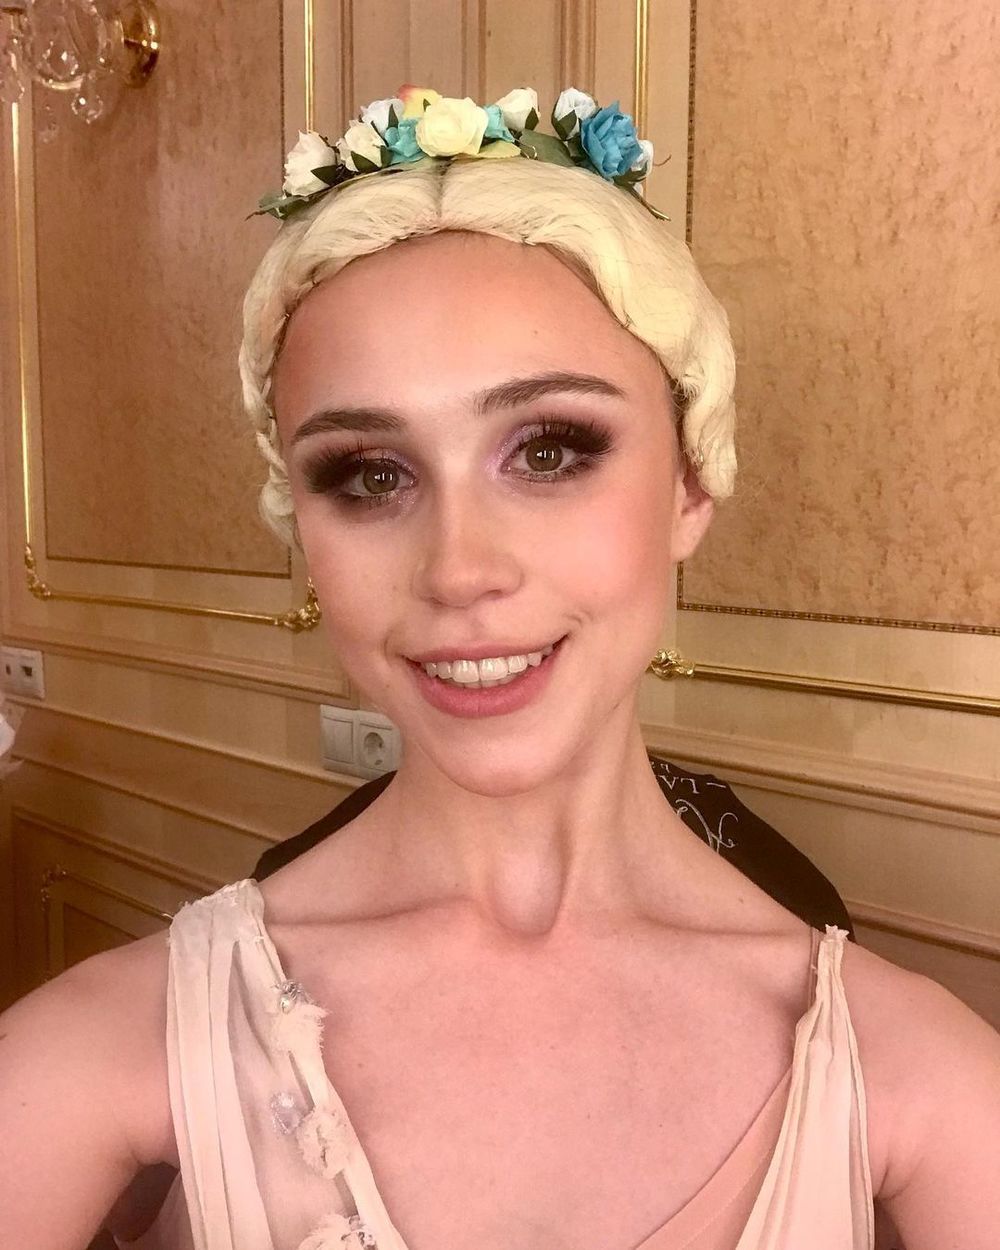 Умерла балерина Алеся Лазарева: последние фото 20-летней артистки